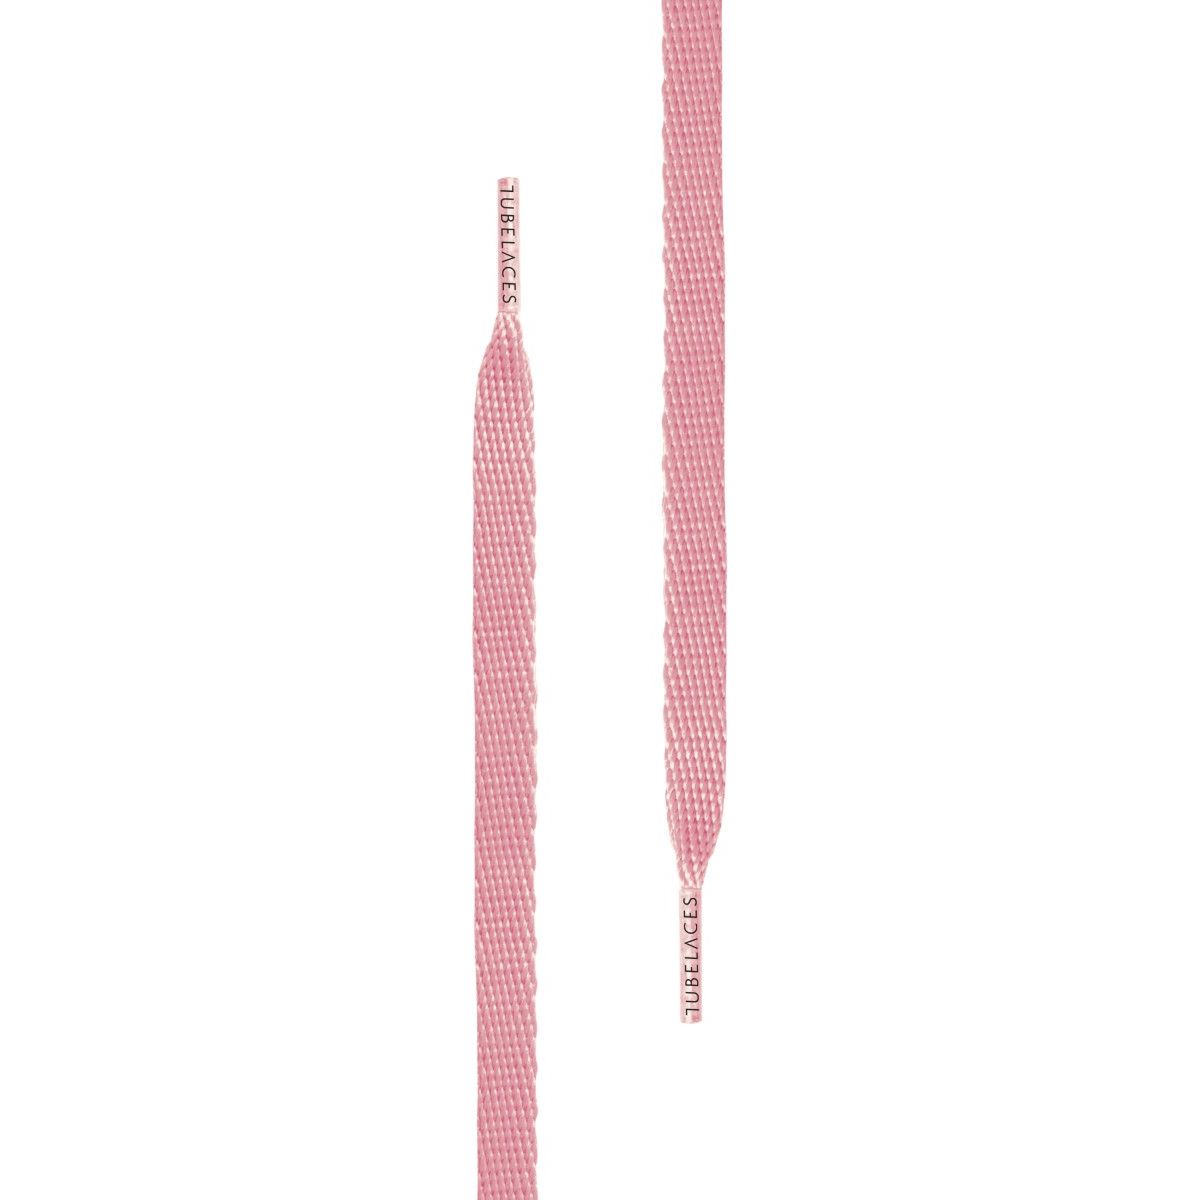 Tubelaces White Flat Unisex Shoelaces Light Pink 120 cm